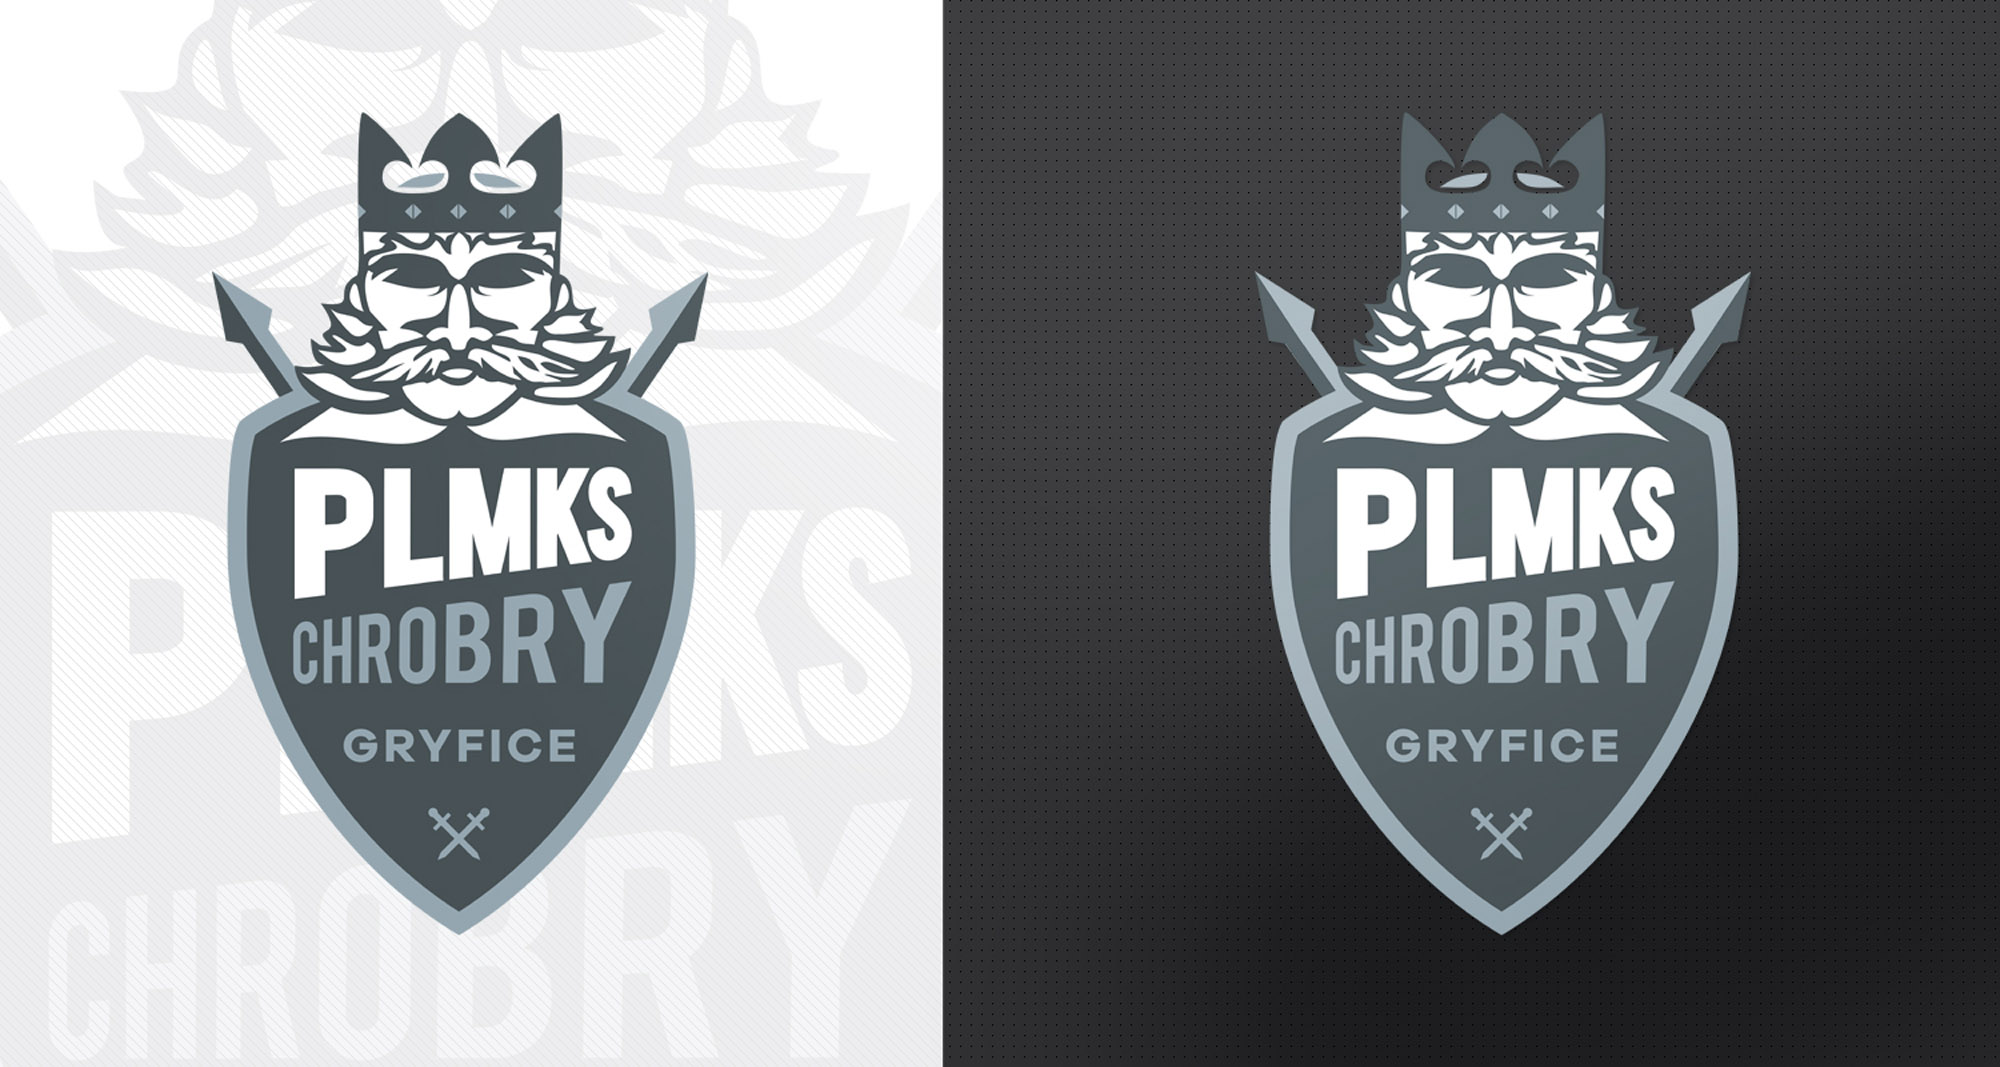 PLMKS Chrobry Gryfice - Klub Sportowy. Shadowart projekt logo.